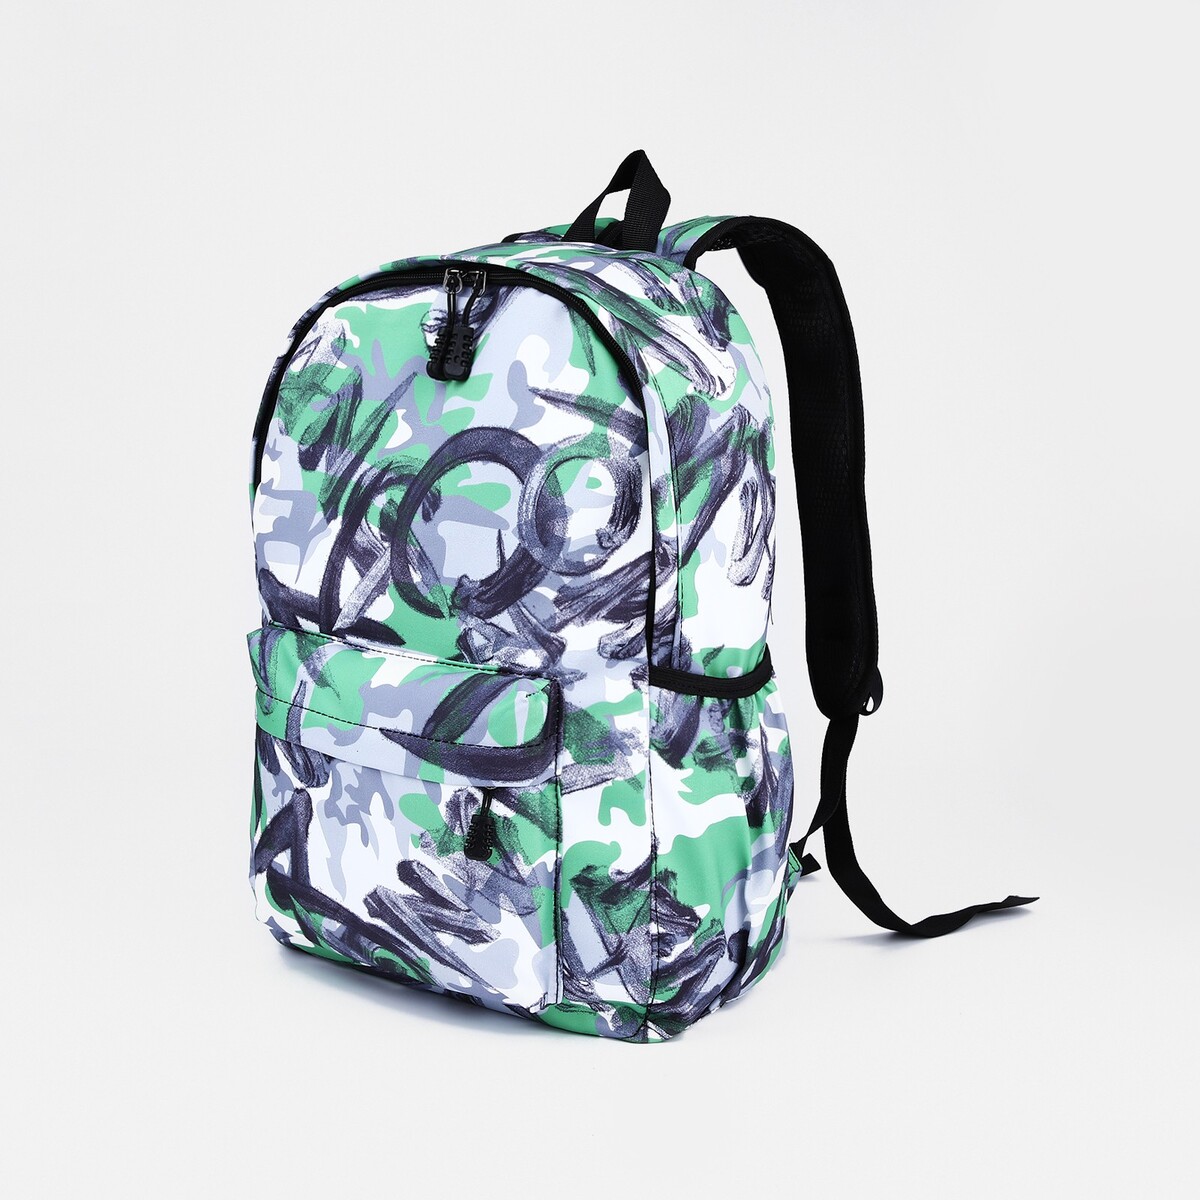 Рюкзак школьный из текстиля на молнии, 3 кармана, цвет зеленый/серый рюкзак школьный из текстиля на молнии 4 кармана серый